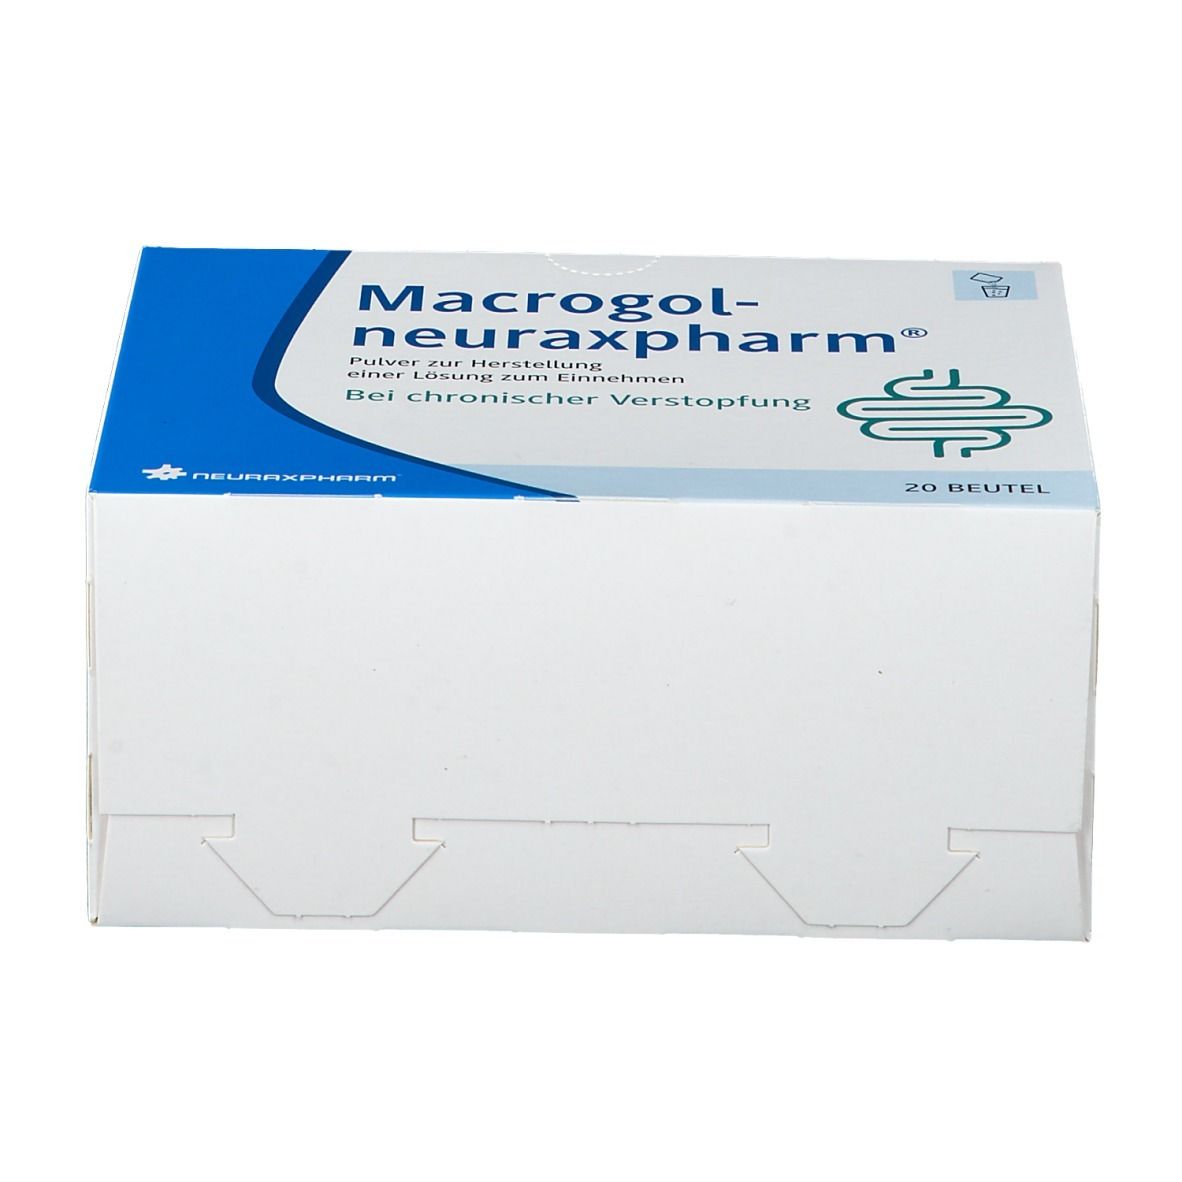 Macrogol neurexapharm